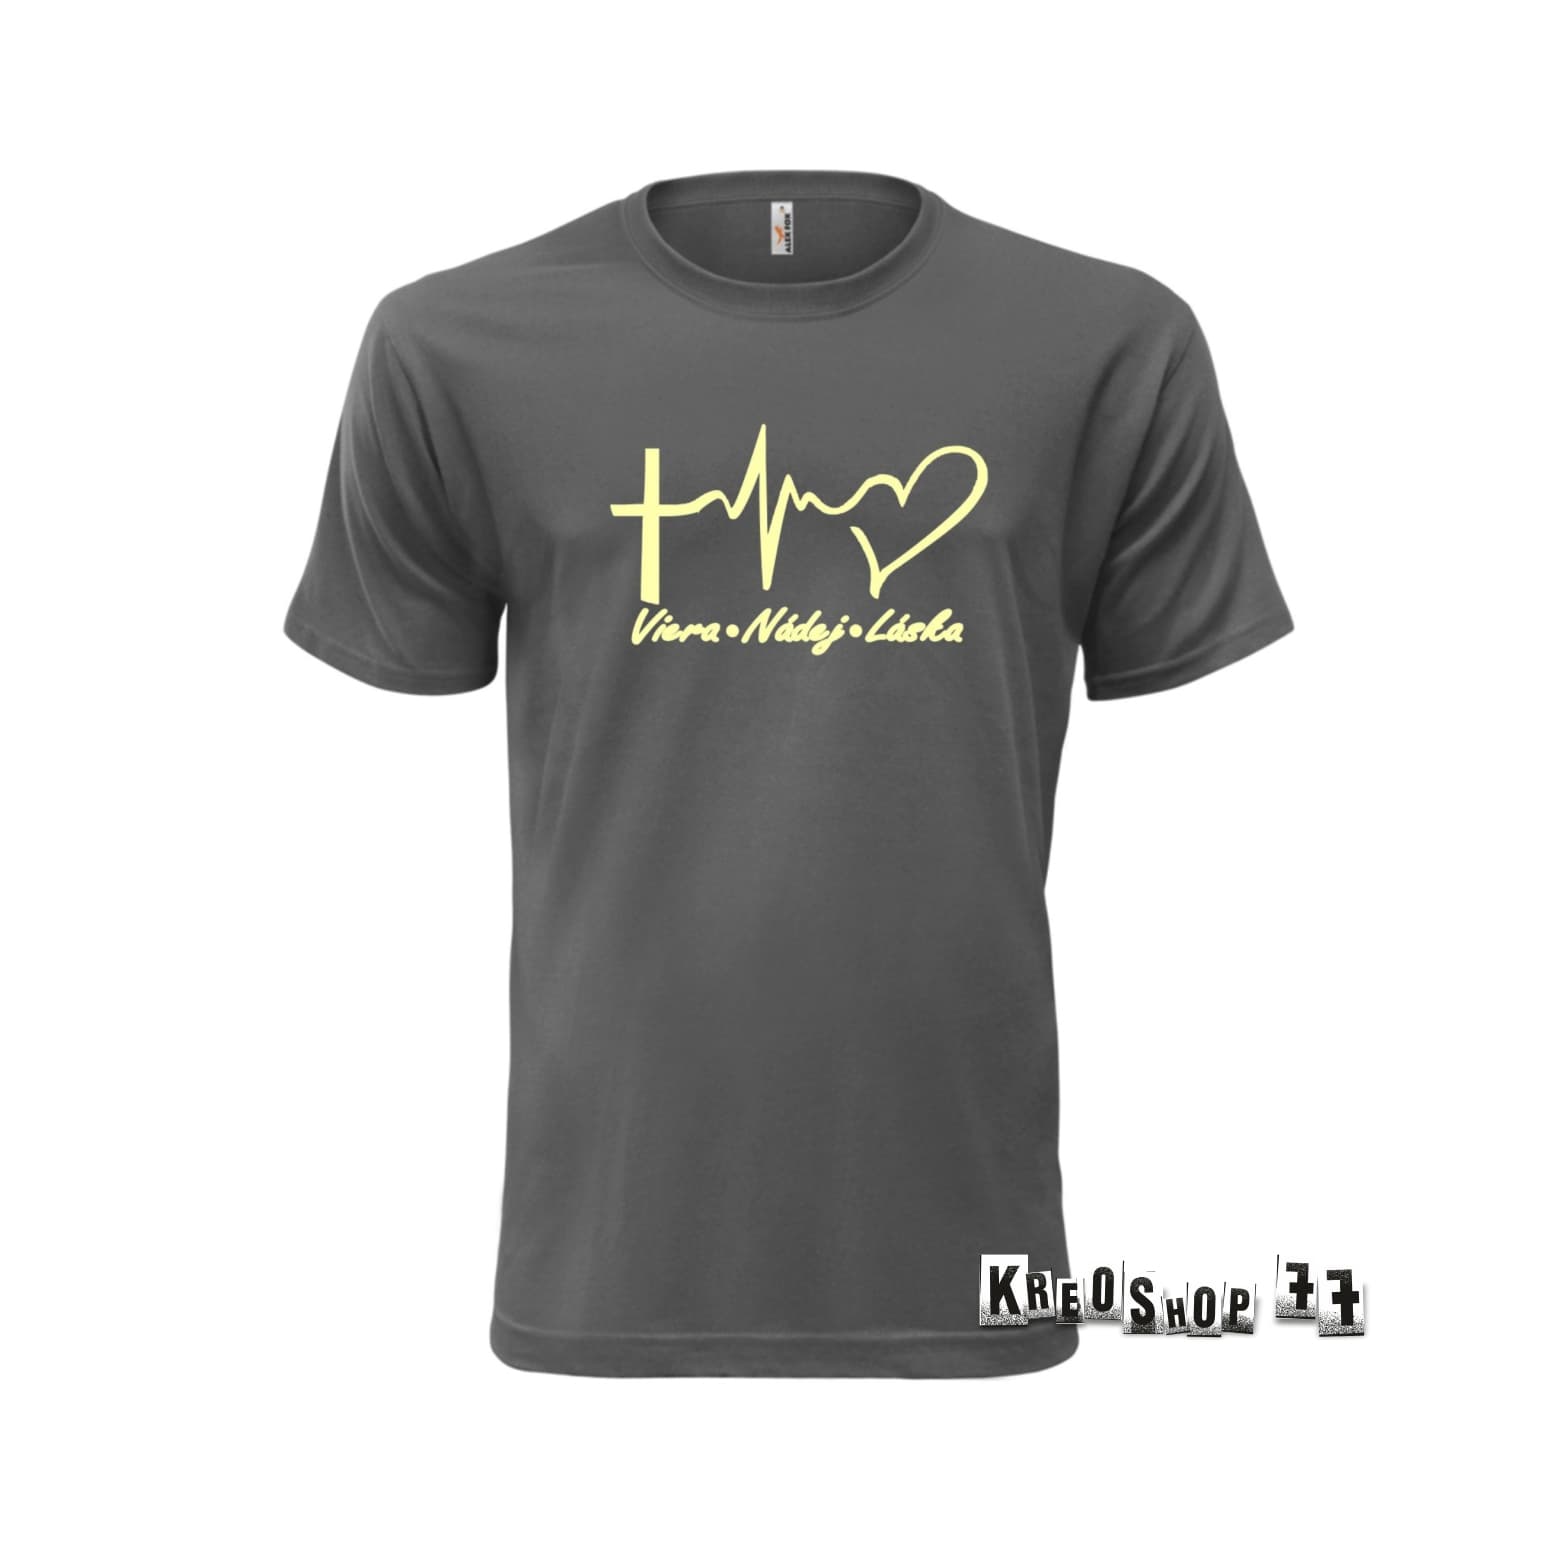 Kresťanské tričko - Viera, nádej, láska - šedé